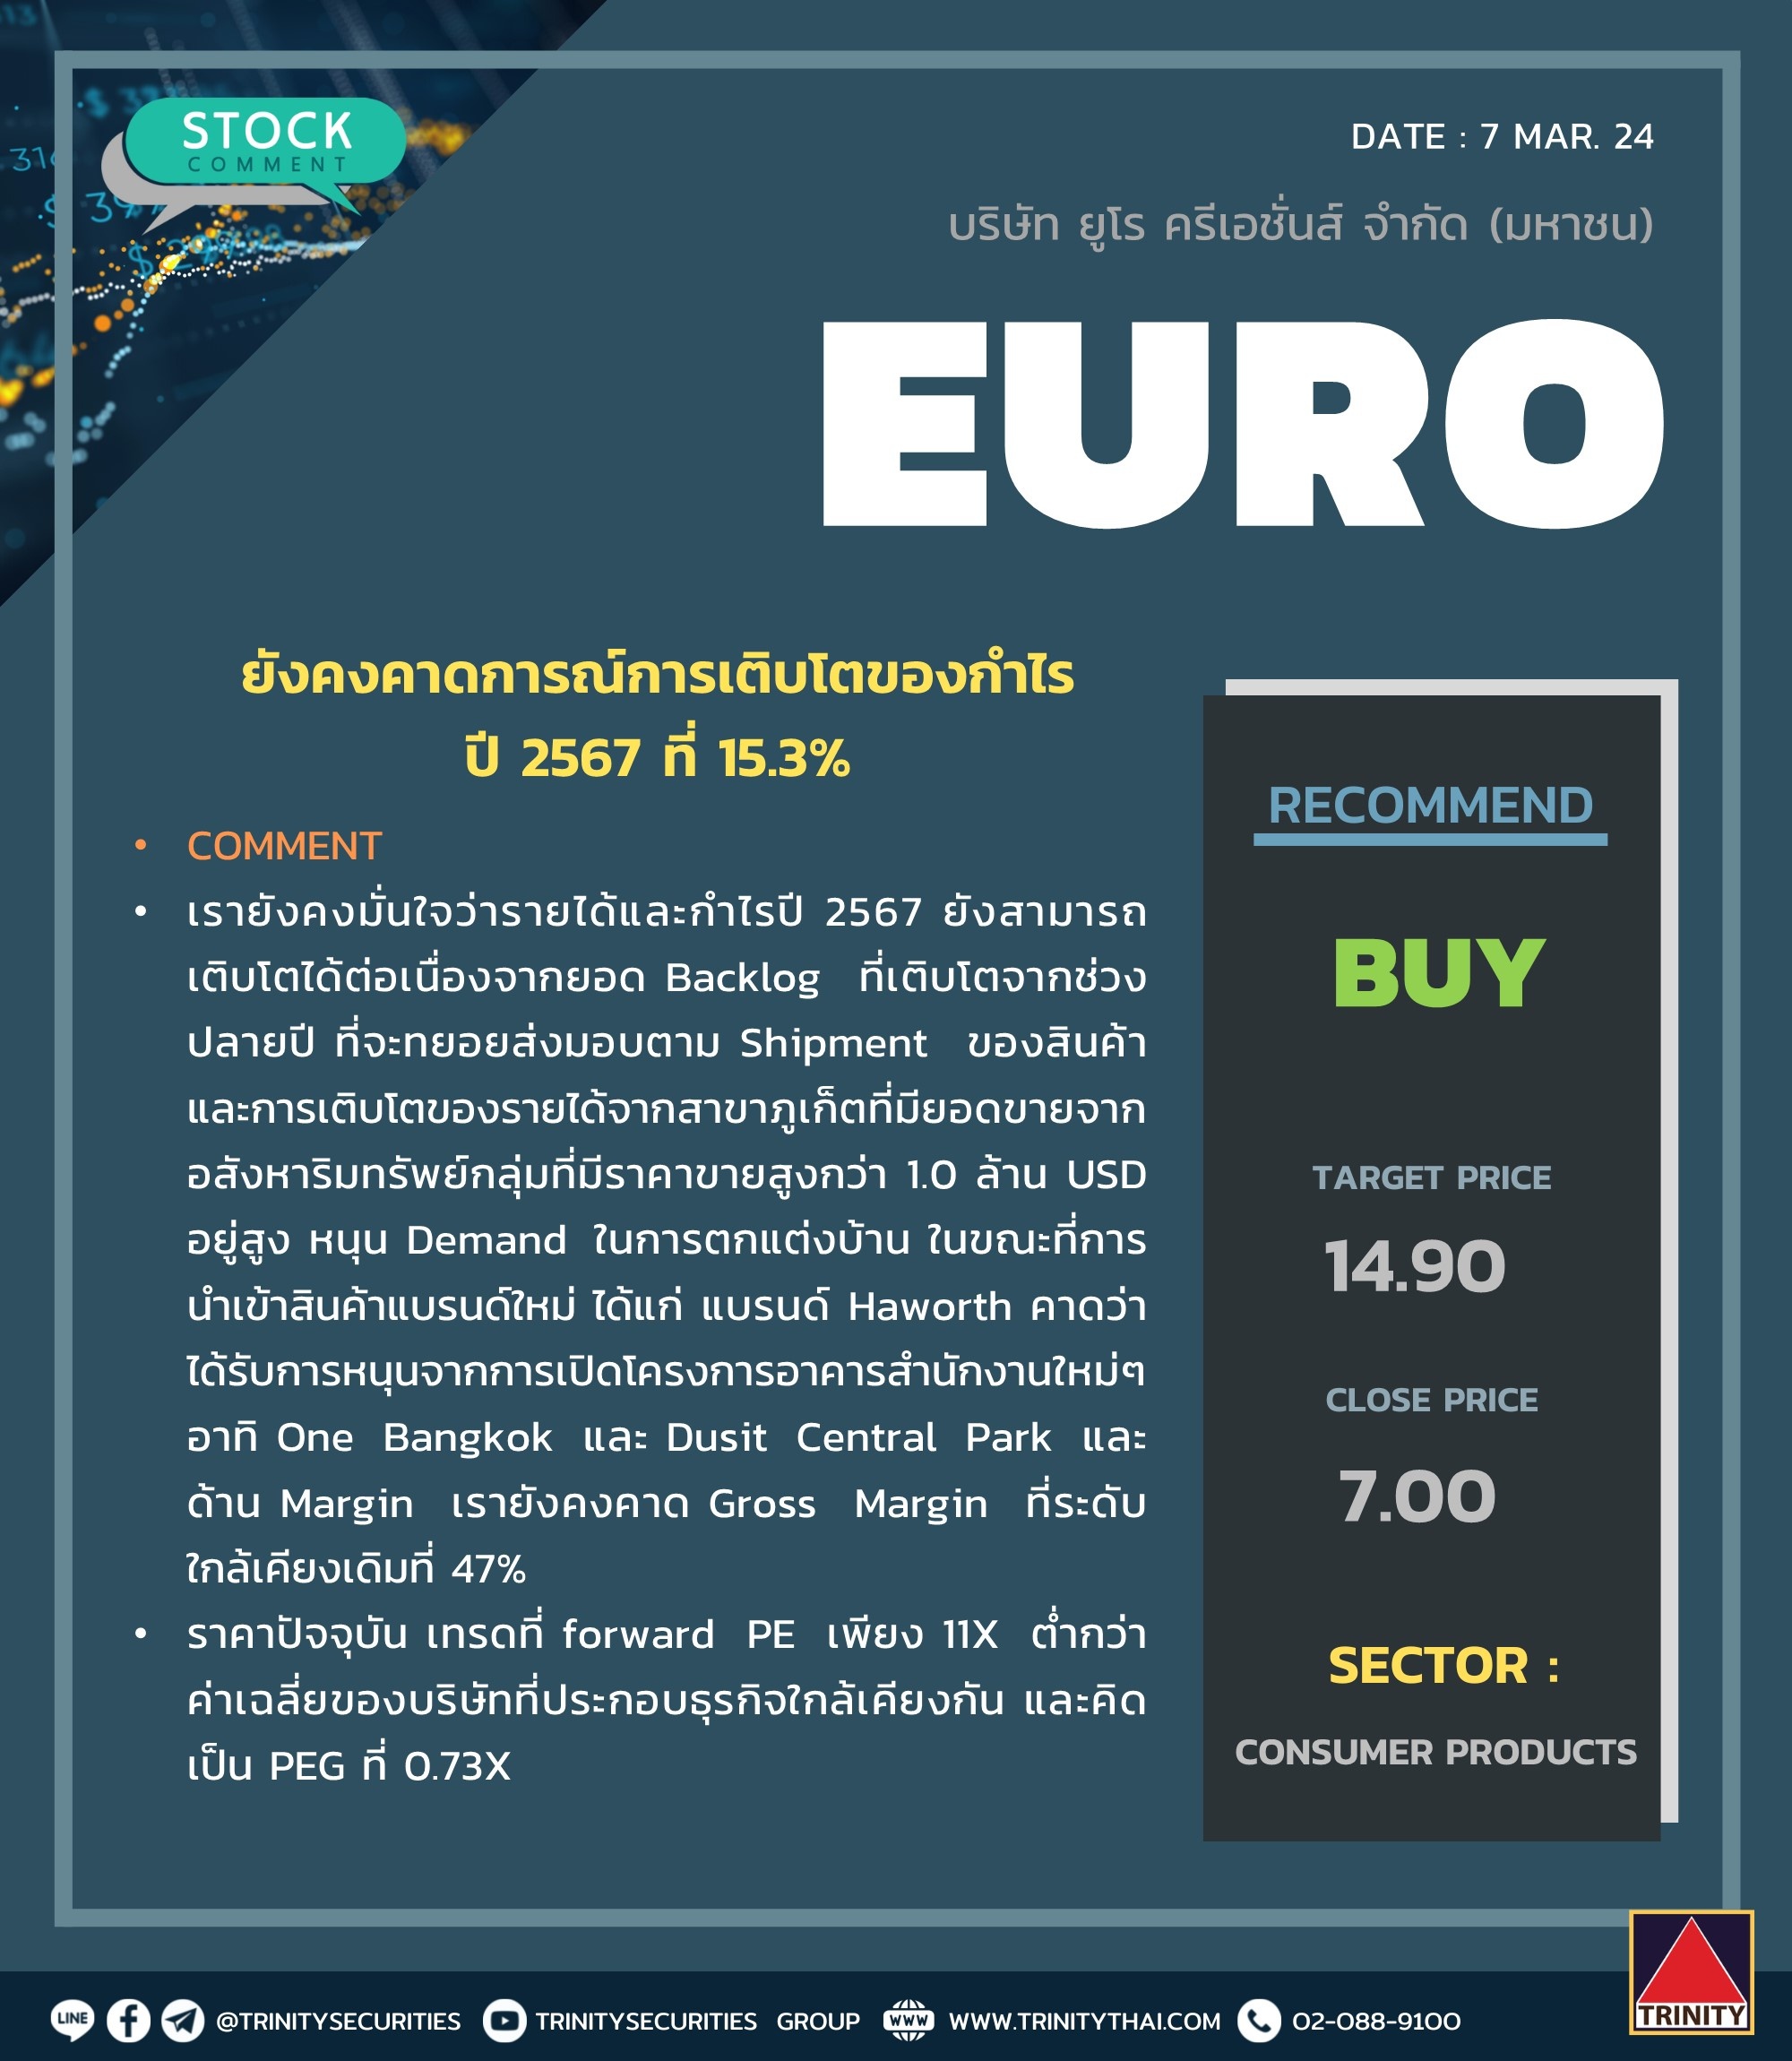 Research "Trinitythai Securities" EURO